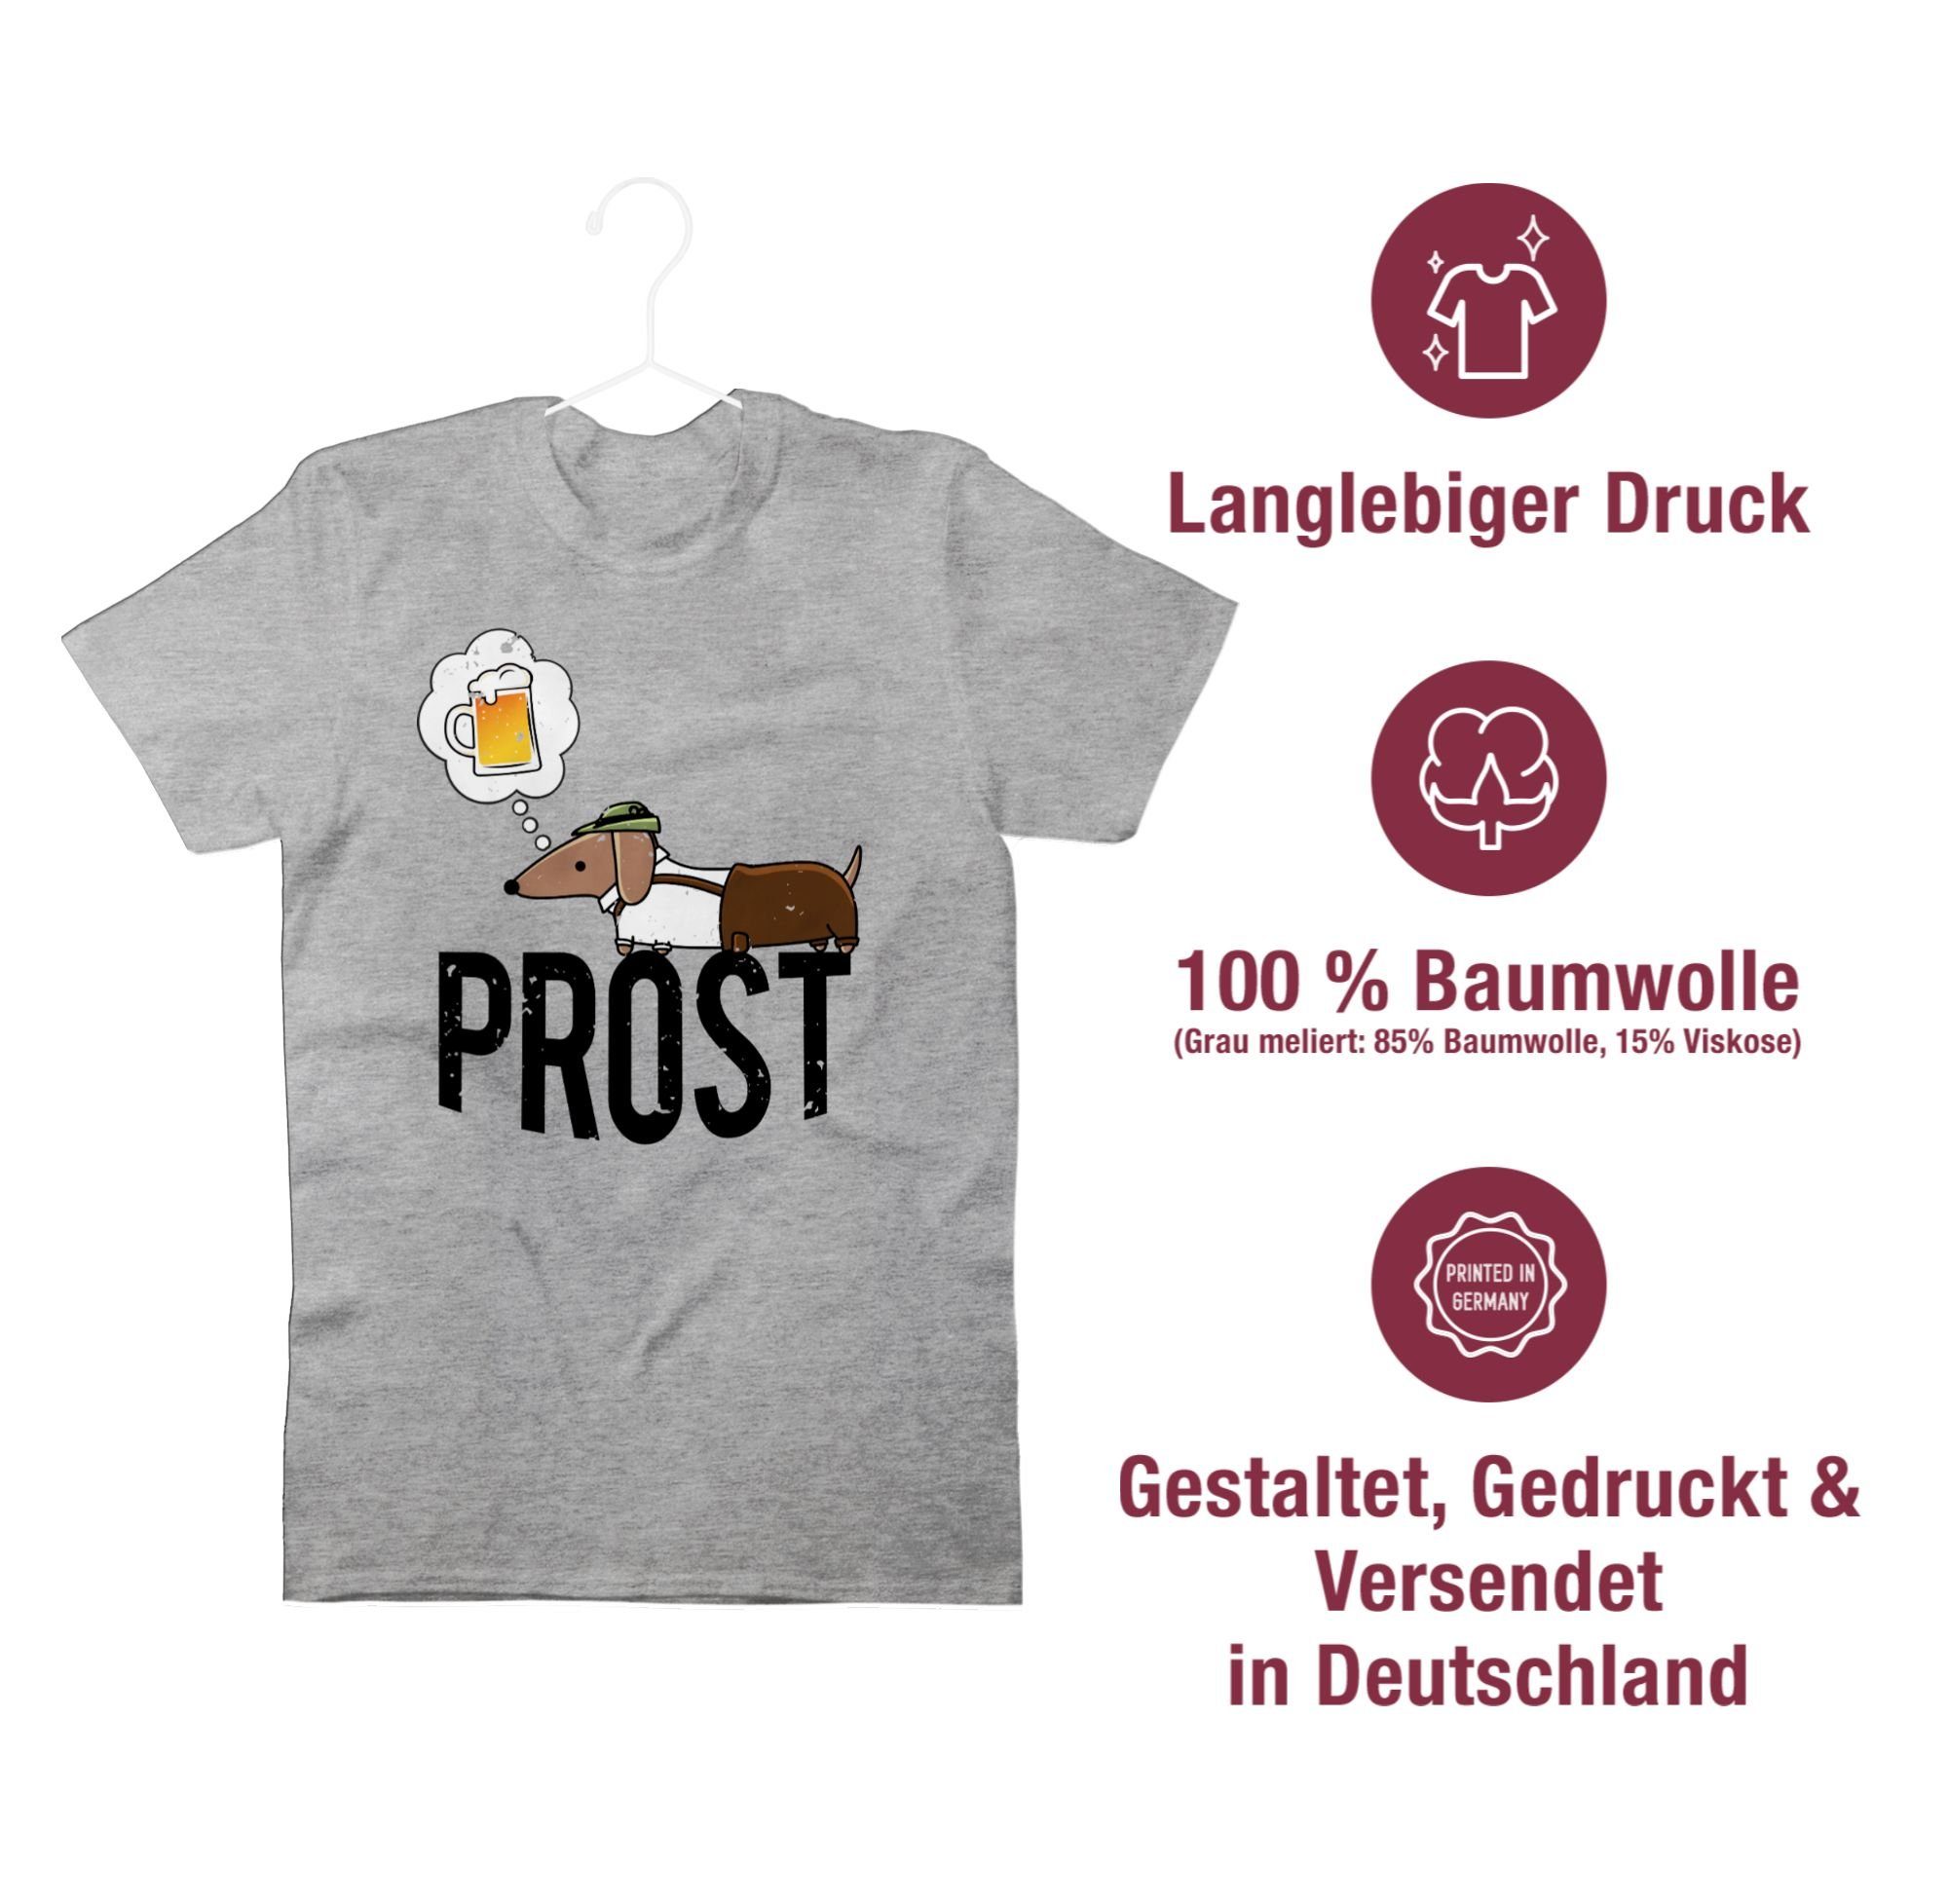 Shirtracer T-Shirt Prost meliert Oktoberfest für Grau Mode mit 02 Vintage und Herren Dackel Bier